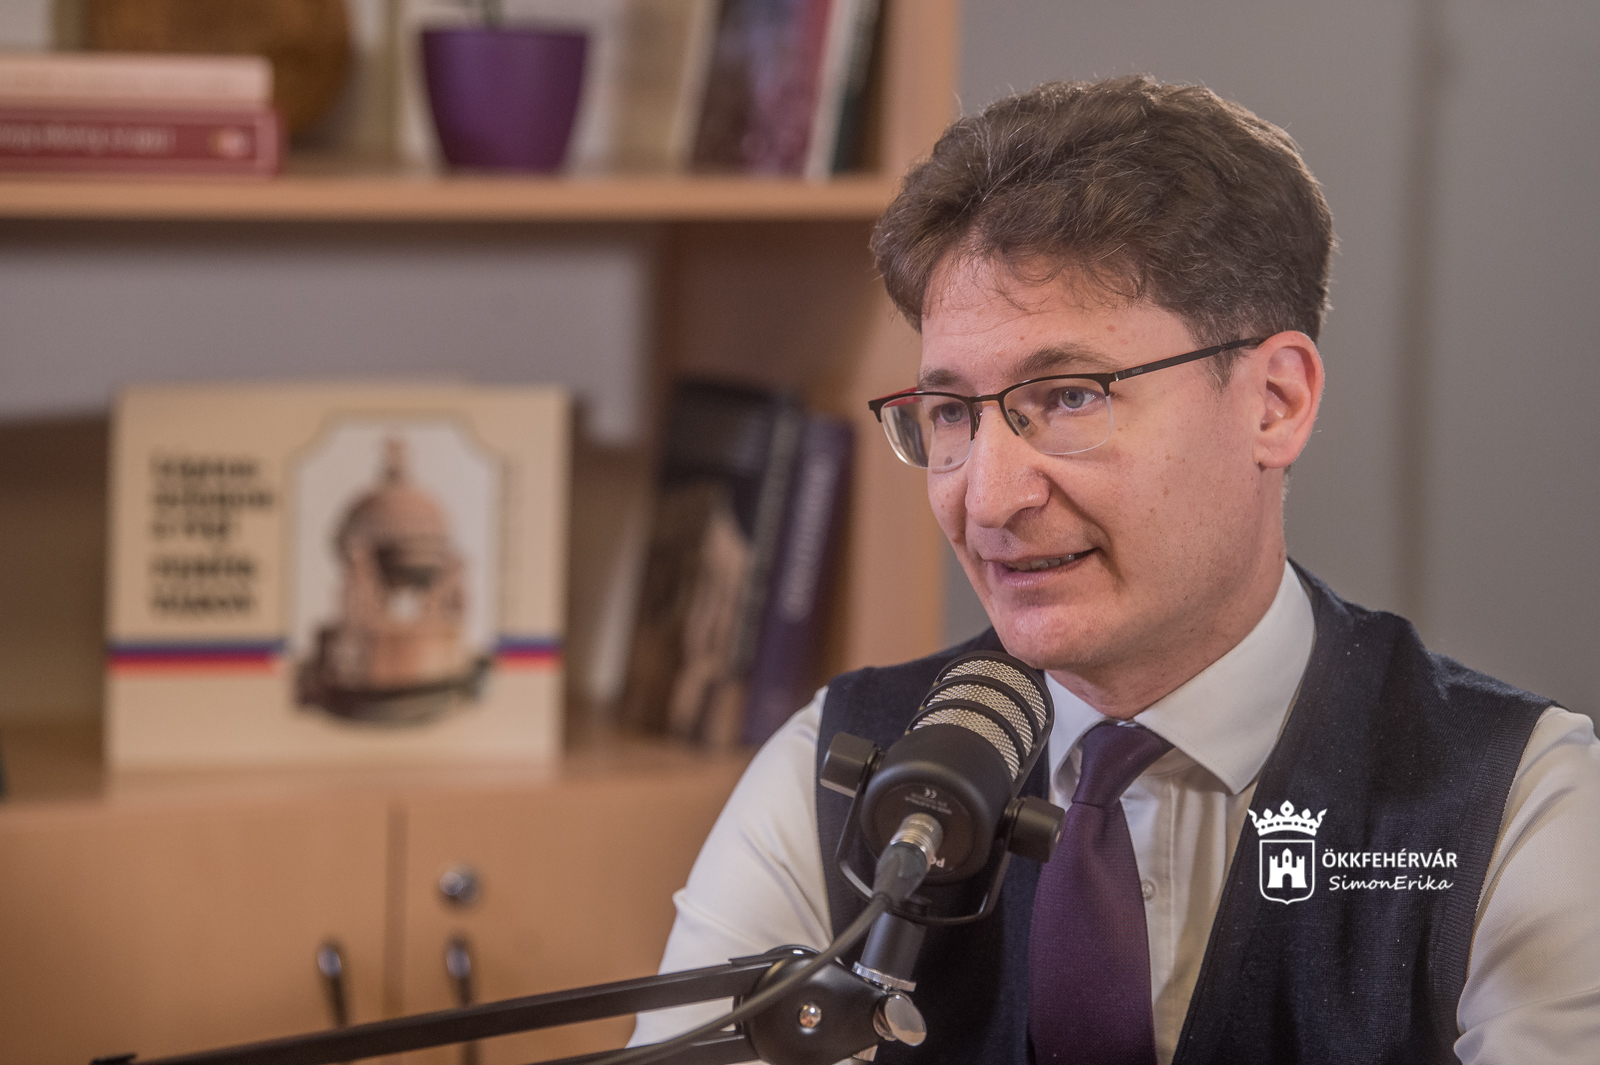 Van miből erőt meríteni - évértékelő beszélgetés Székesfehérvár polgármesterével